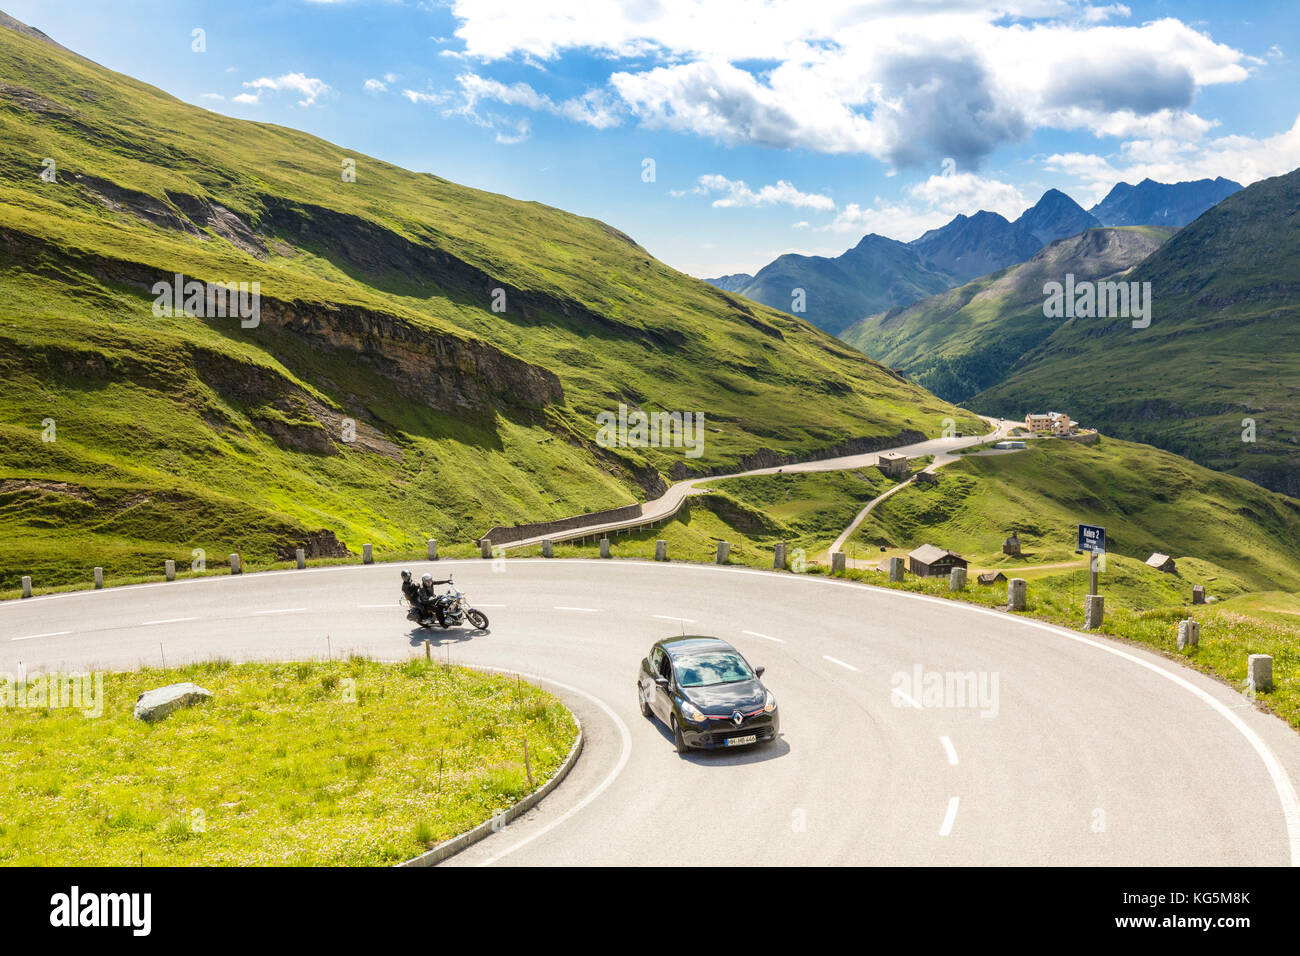 Con auto e moto sulle serpentine di Hohe Tauern Grossglockner Strada alpina, Alti Tauri parco nazionale della Carinzia, Austria Foto Stock